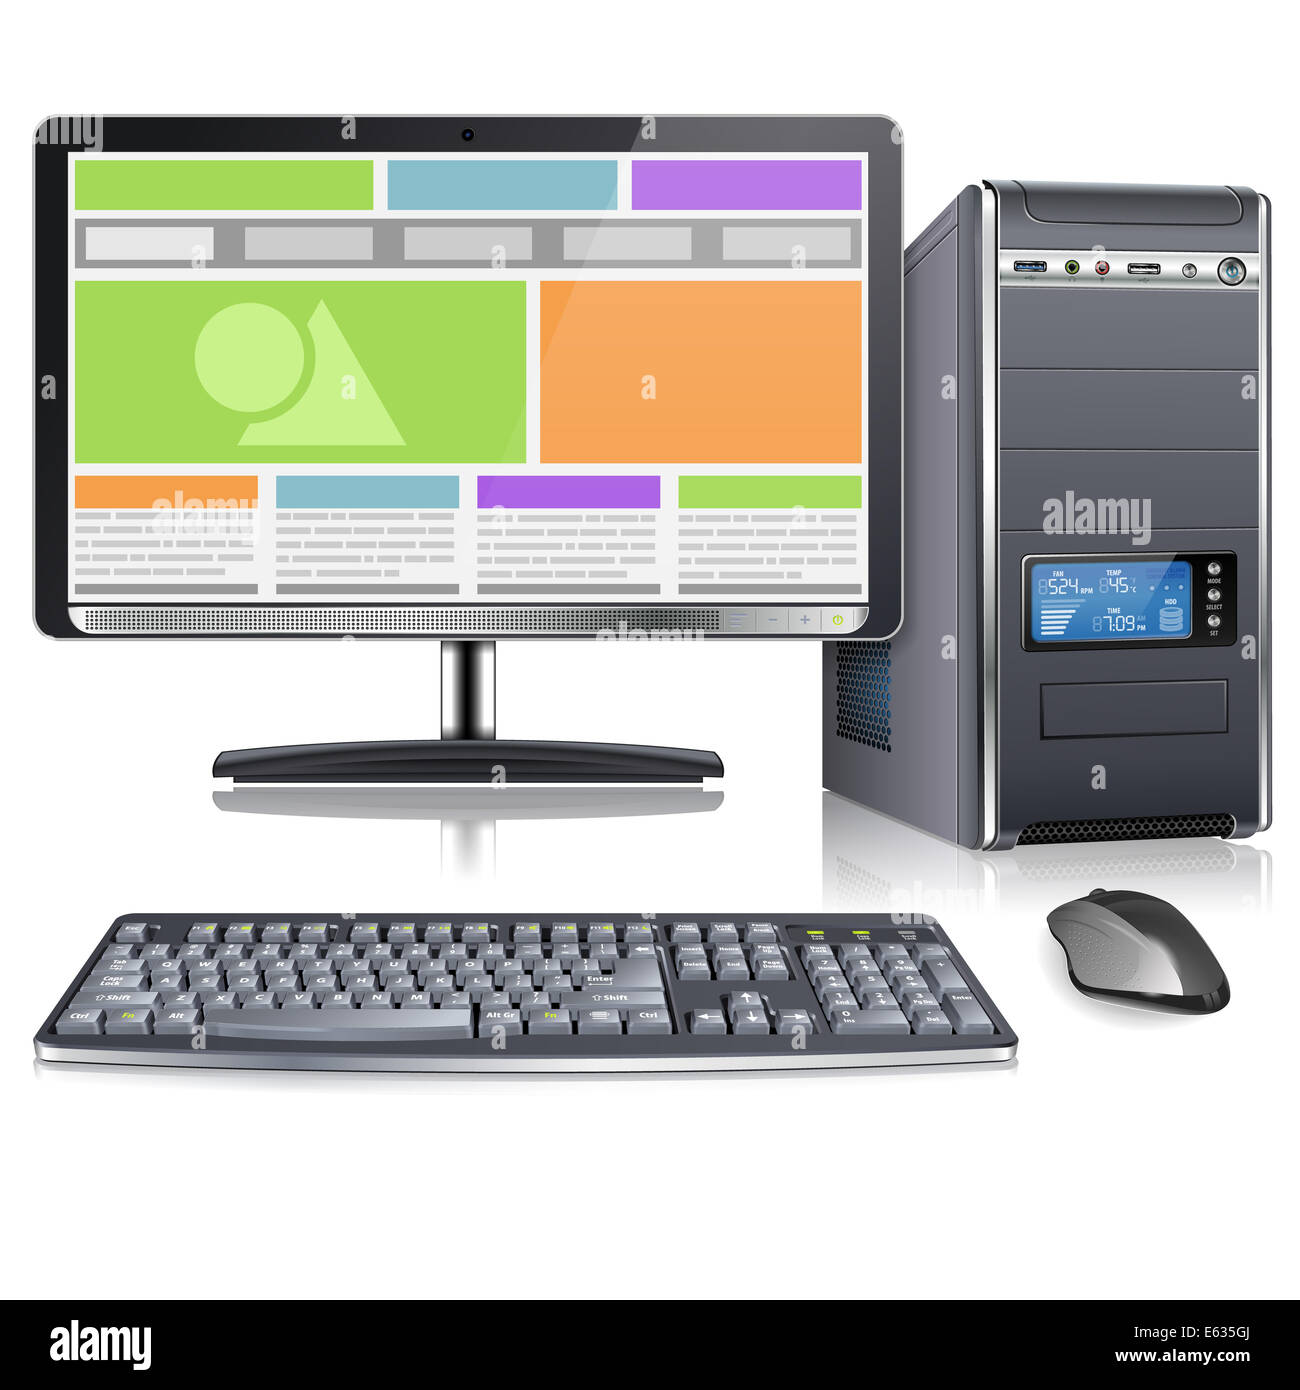 PC-Gehäuse mit Monitor, Tastatur, Maus und Responsive Web Design auf dem Bildschirm, isoliert auf weißem Hintergrund Stockfoto